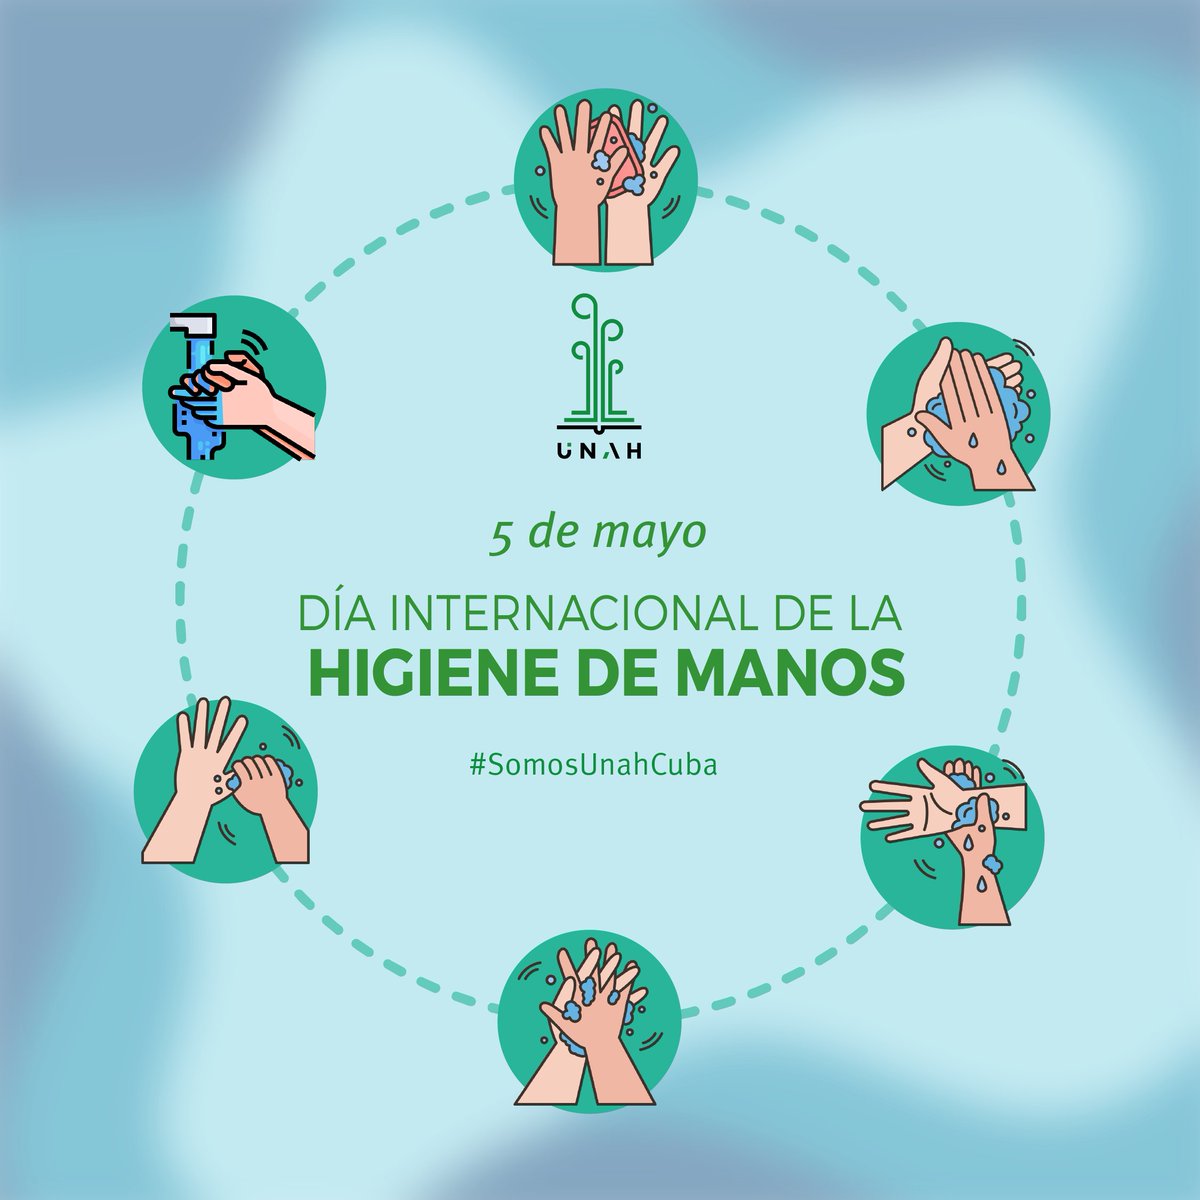 🌱🧼Lavarse las manos previene enfermedades y la propagación de infecciones a otras personas, a su vez, elimina los microbios y ayuda a prevenir que proliferen bacterias. 
🧴🚿Mantén tus manos limpias 😁 

#SomosUnahCuba
#UniversidadCubana